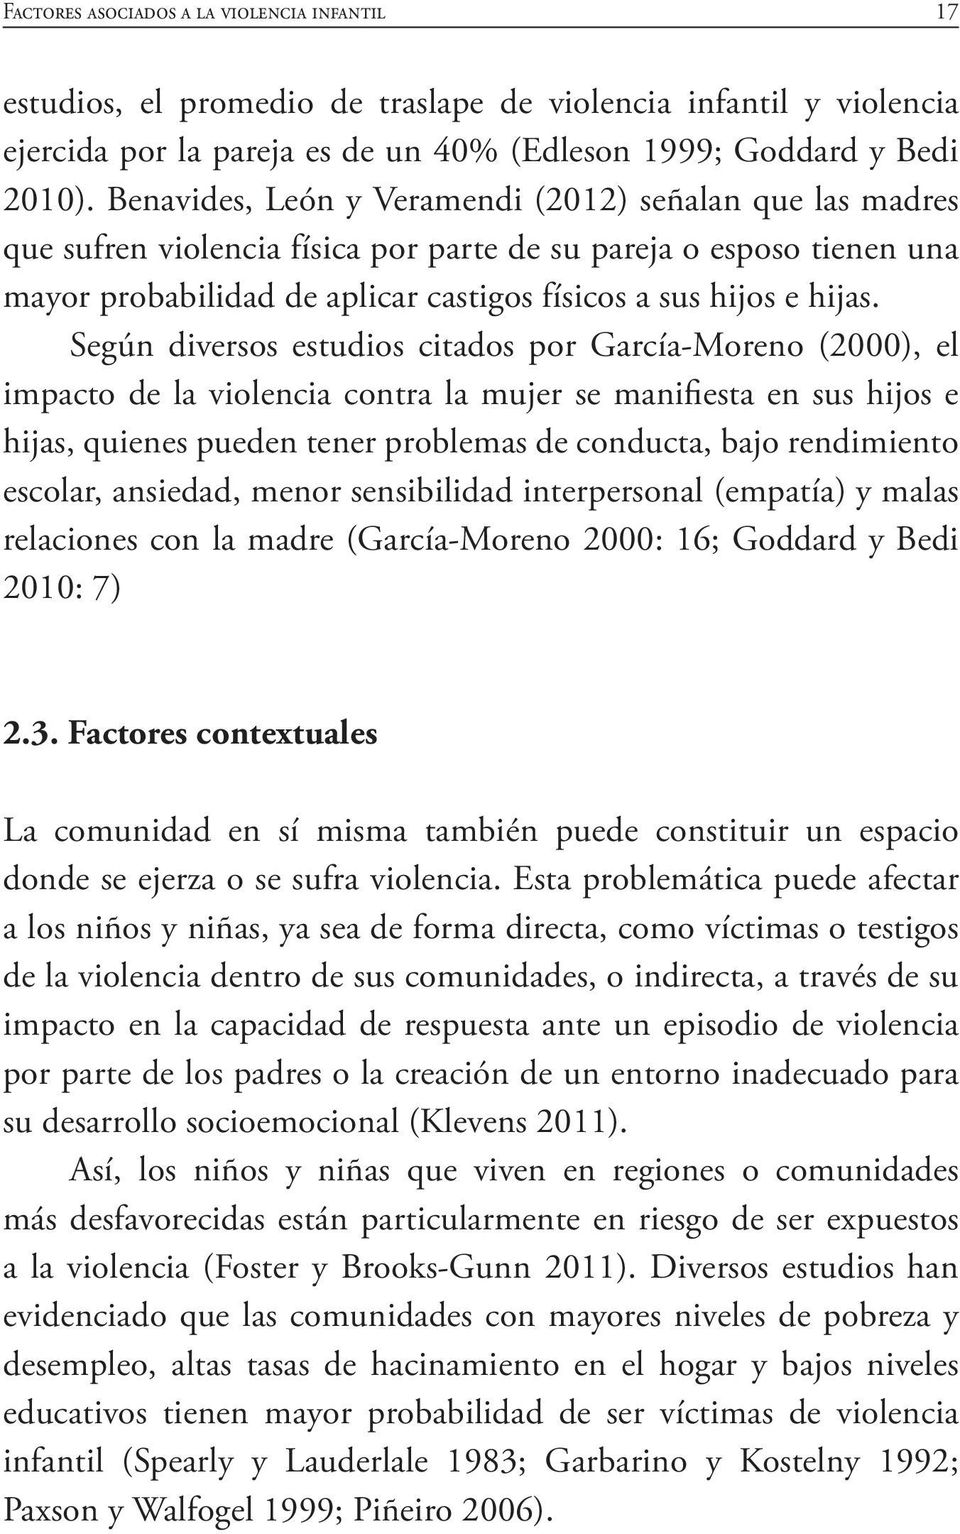 Según diversos estudios citados por García-Moreno (2000), el impacto de la violencia contra la mujer se manifiesta en sus hijos e hijas, quienes pueden tener problemas de conducta, bajo rendimiento